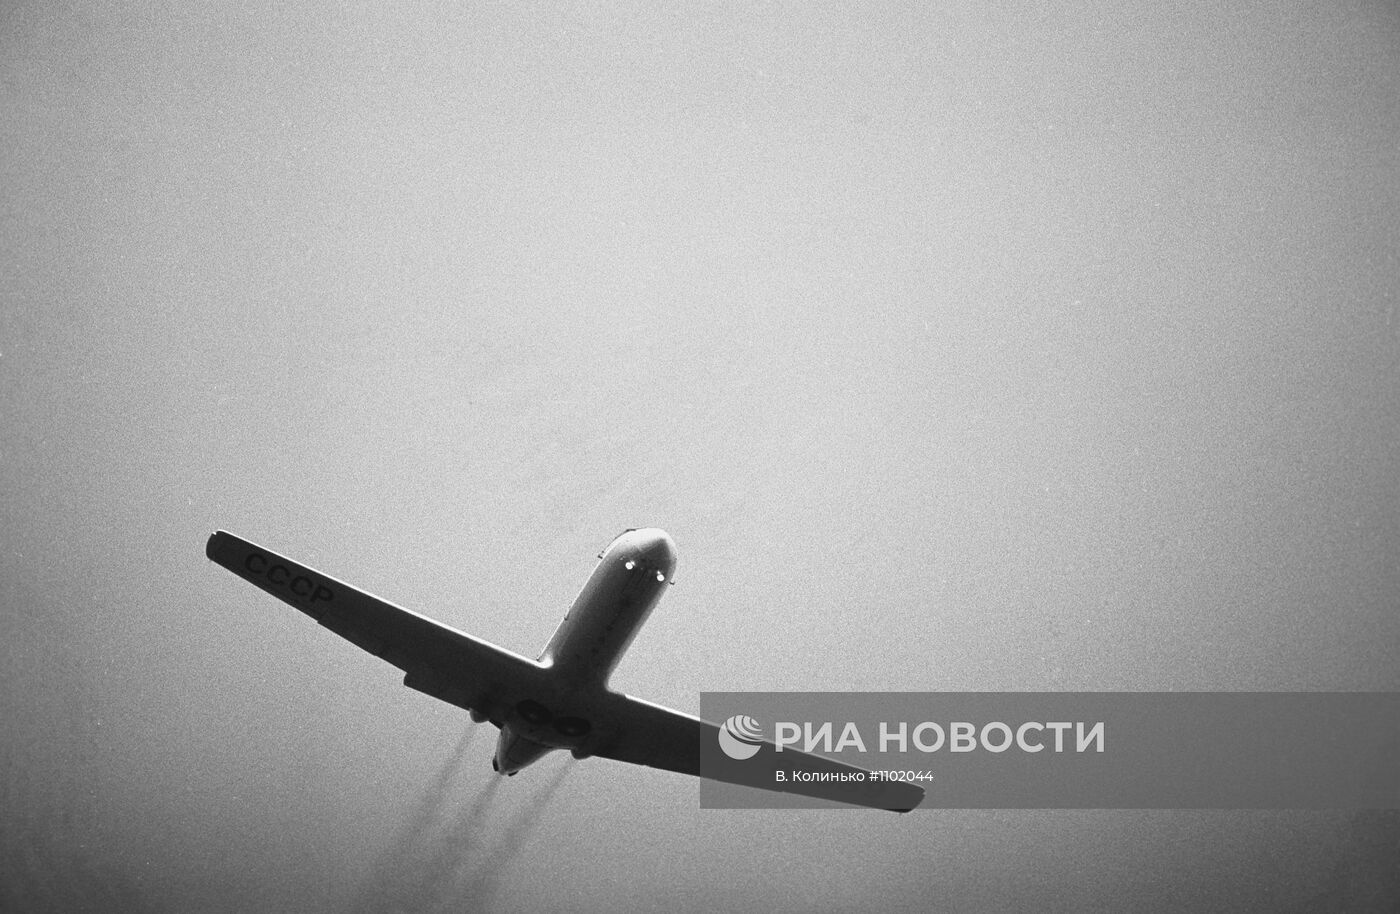 Самолет "Як-40"